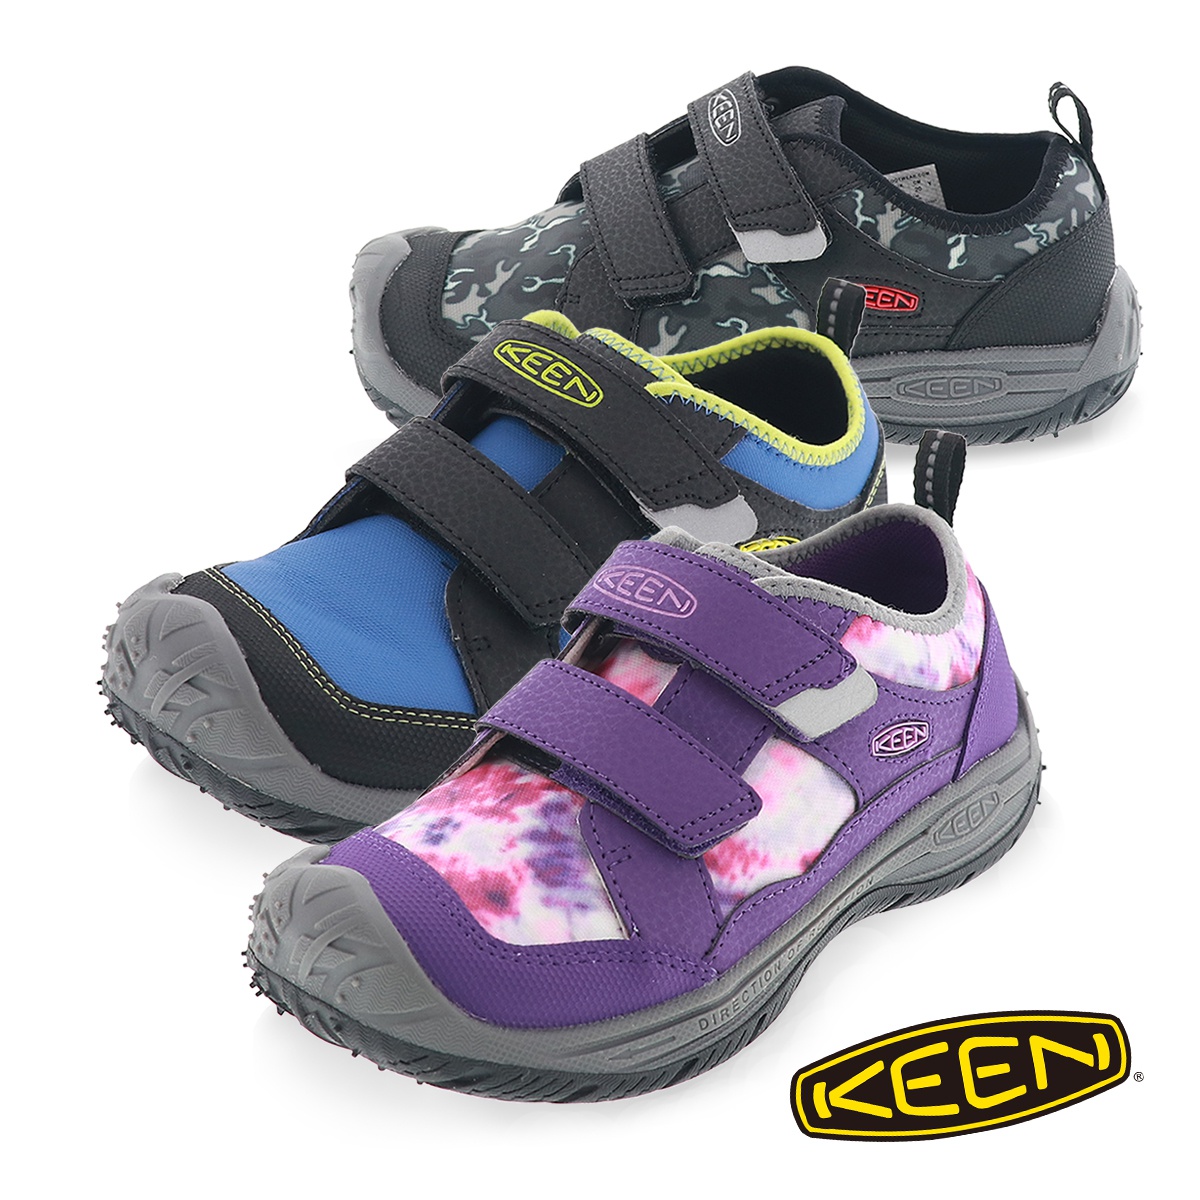 【セール】KEEN キーン スピード ハウンド スニーカー リトルキッズ ビッグキッズ 子供靴 アウトドア キッズ シューズ  ブラック/パープル/ブルー 15.0cm〜23.5cm :speedhound-kj:靴のシューマート 通販 